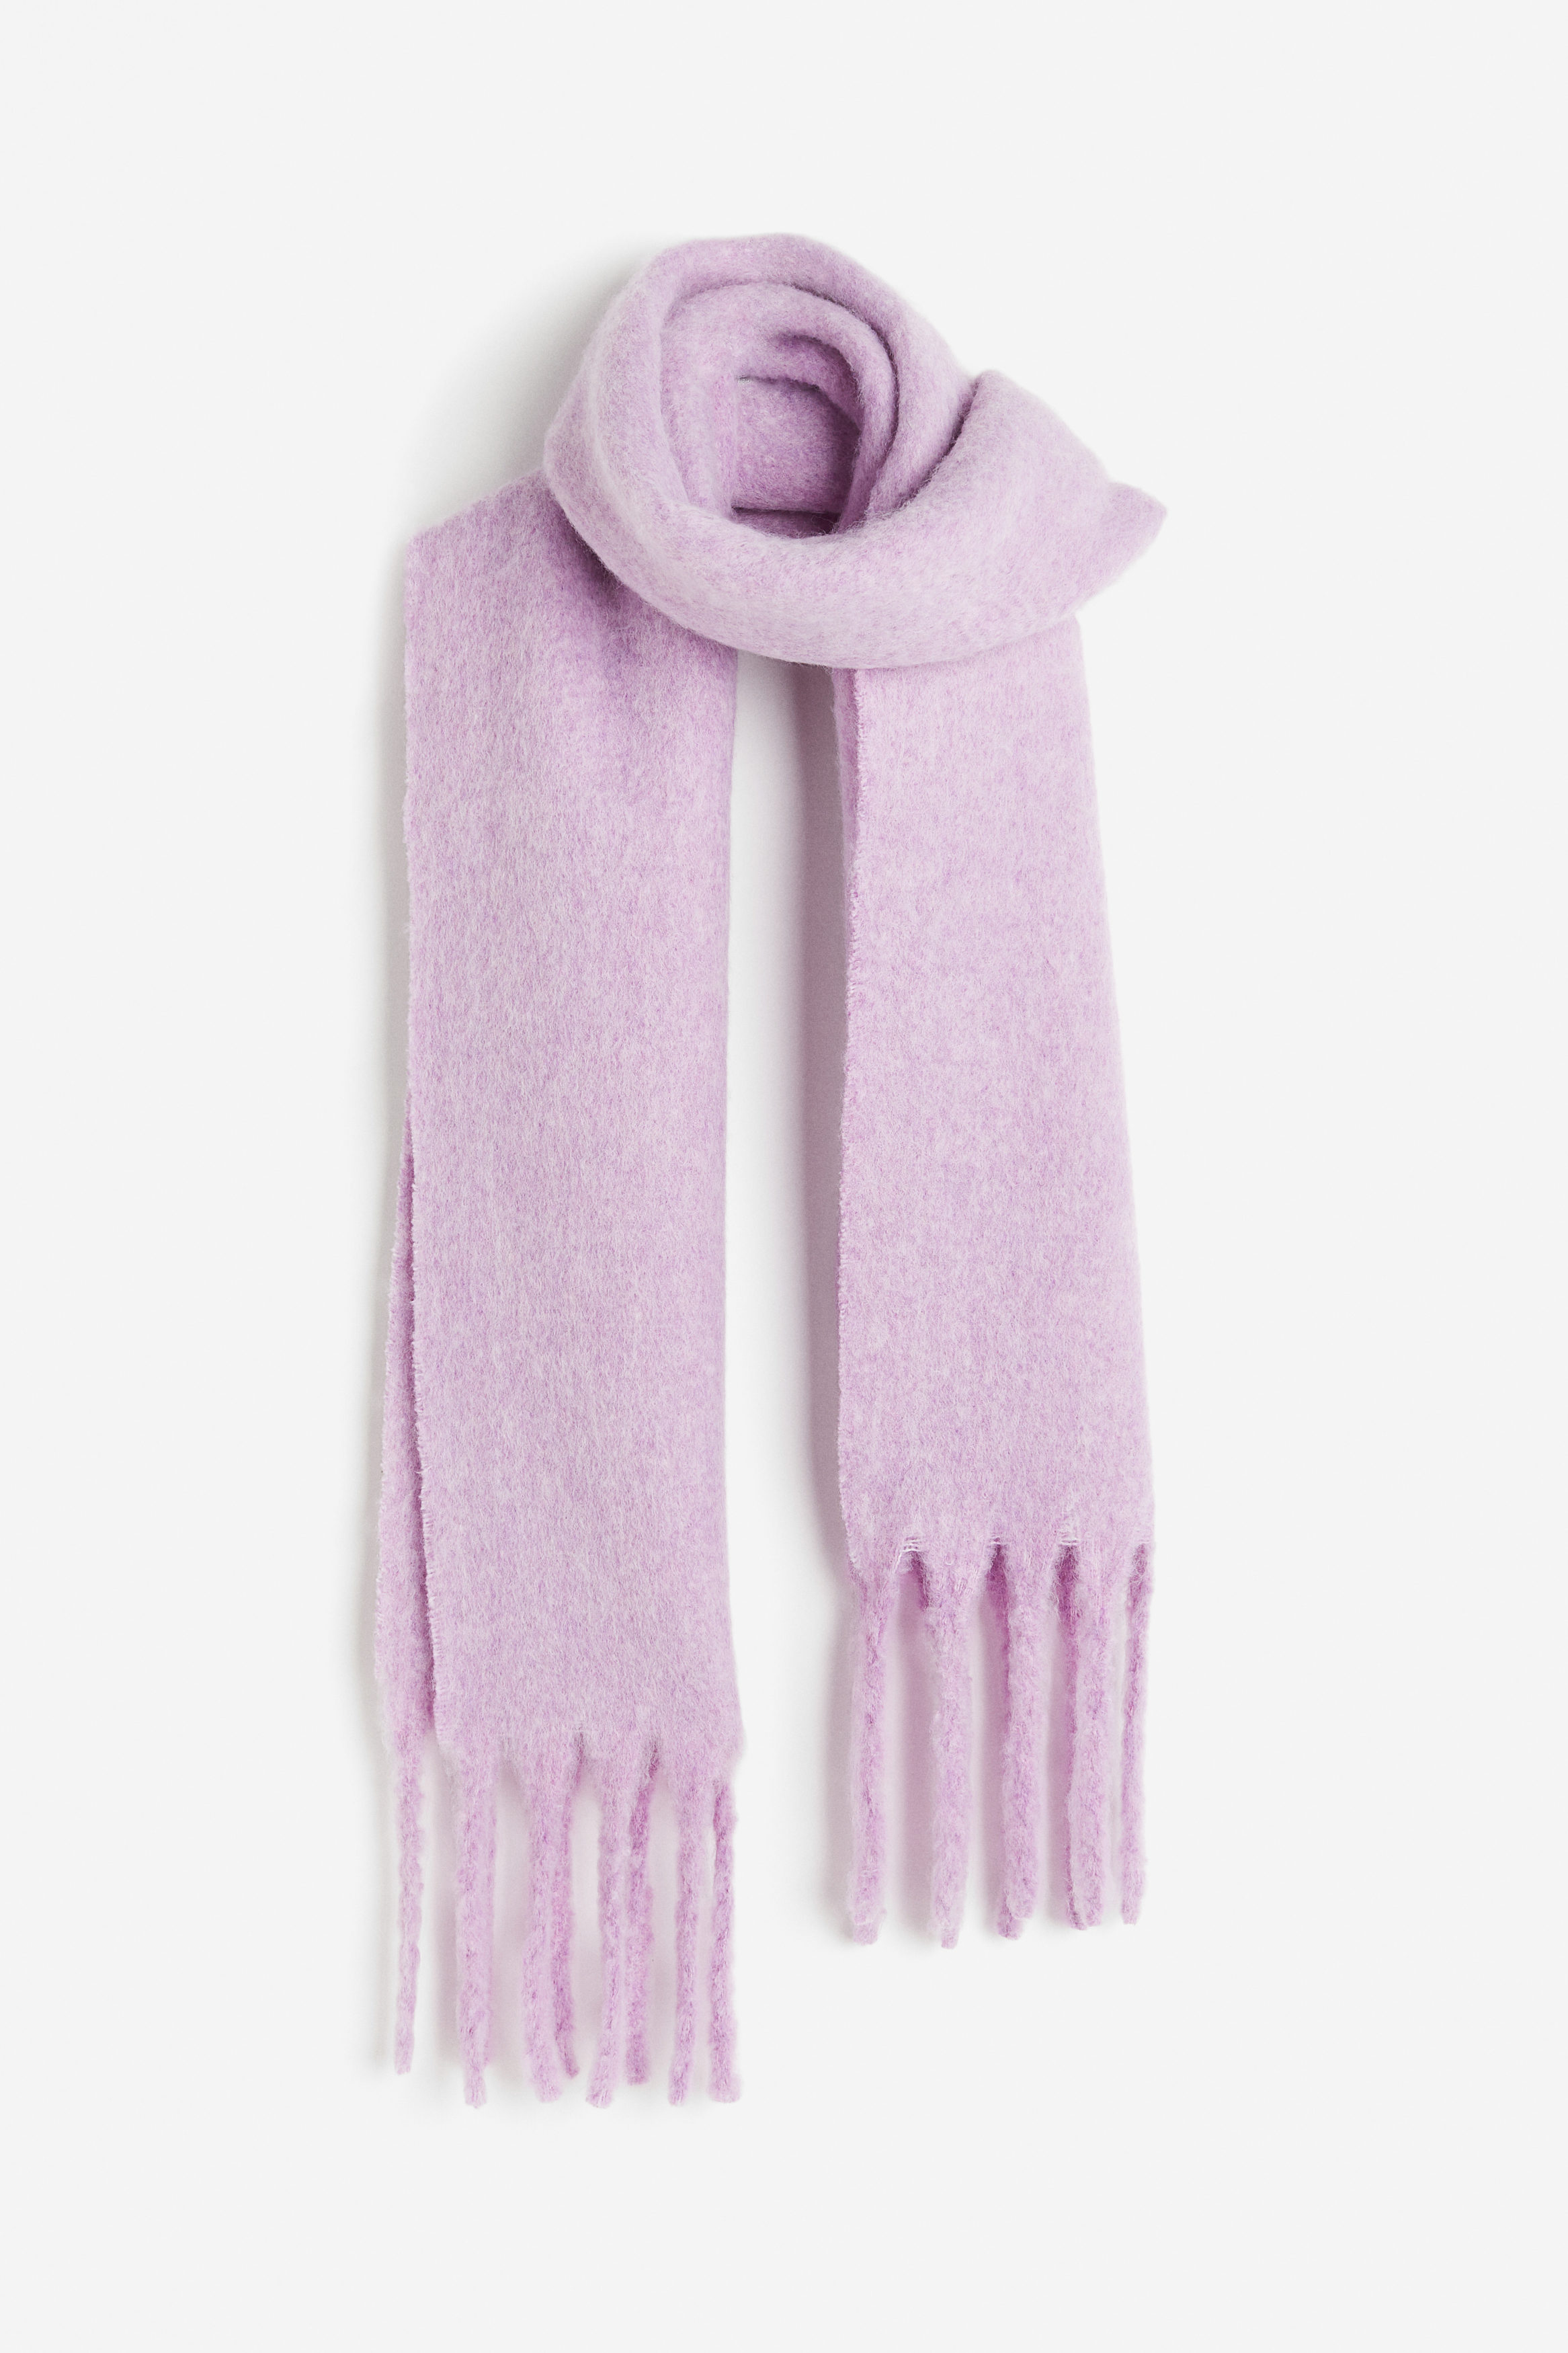 H&M Halstørklæde Lyslilla, Halstørklæder. Farve: Light purple I størrelse 190x30 cm